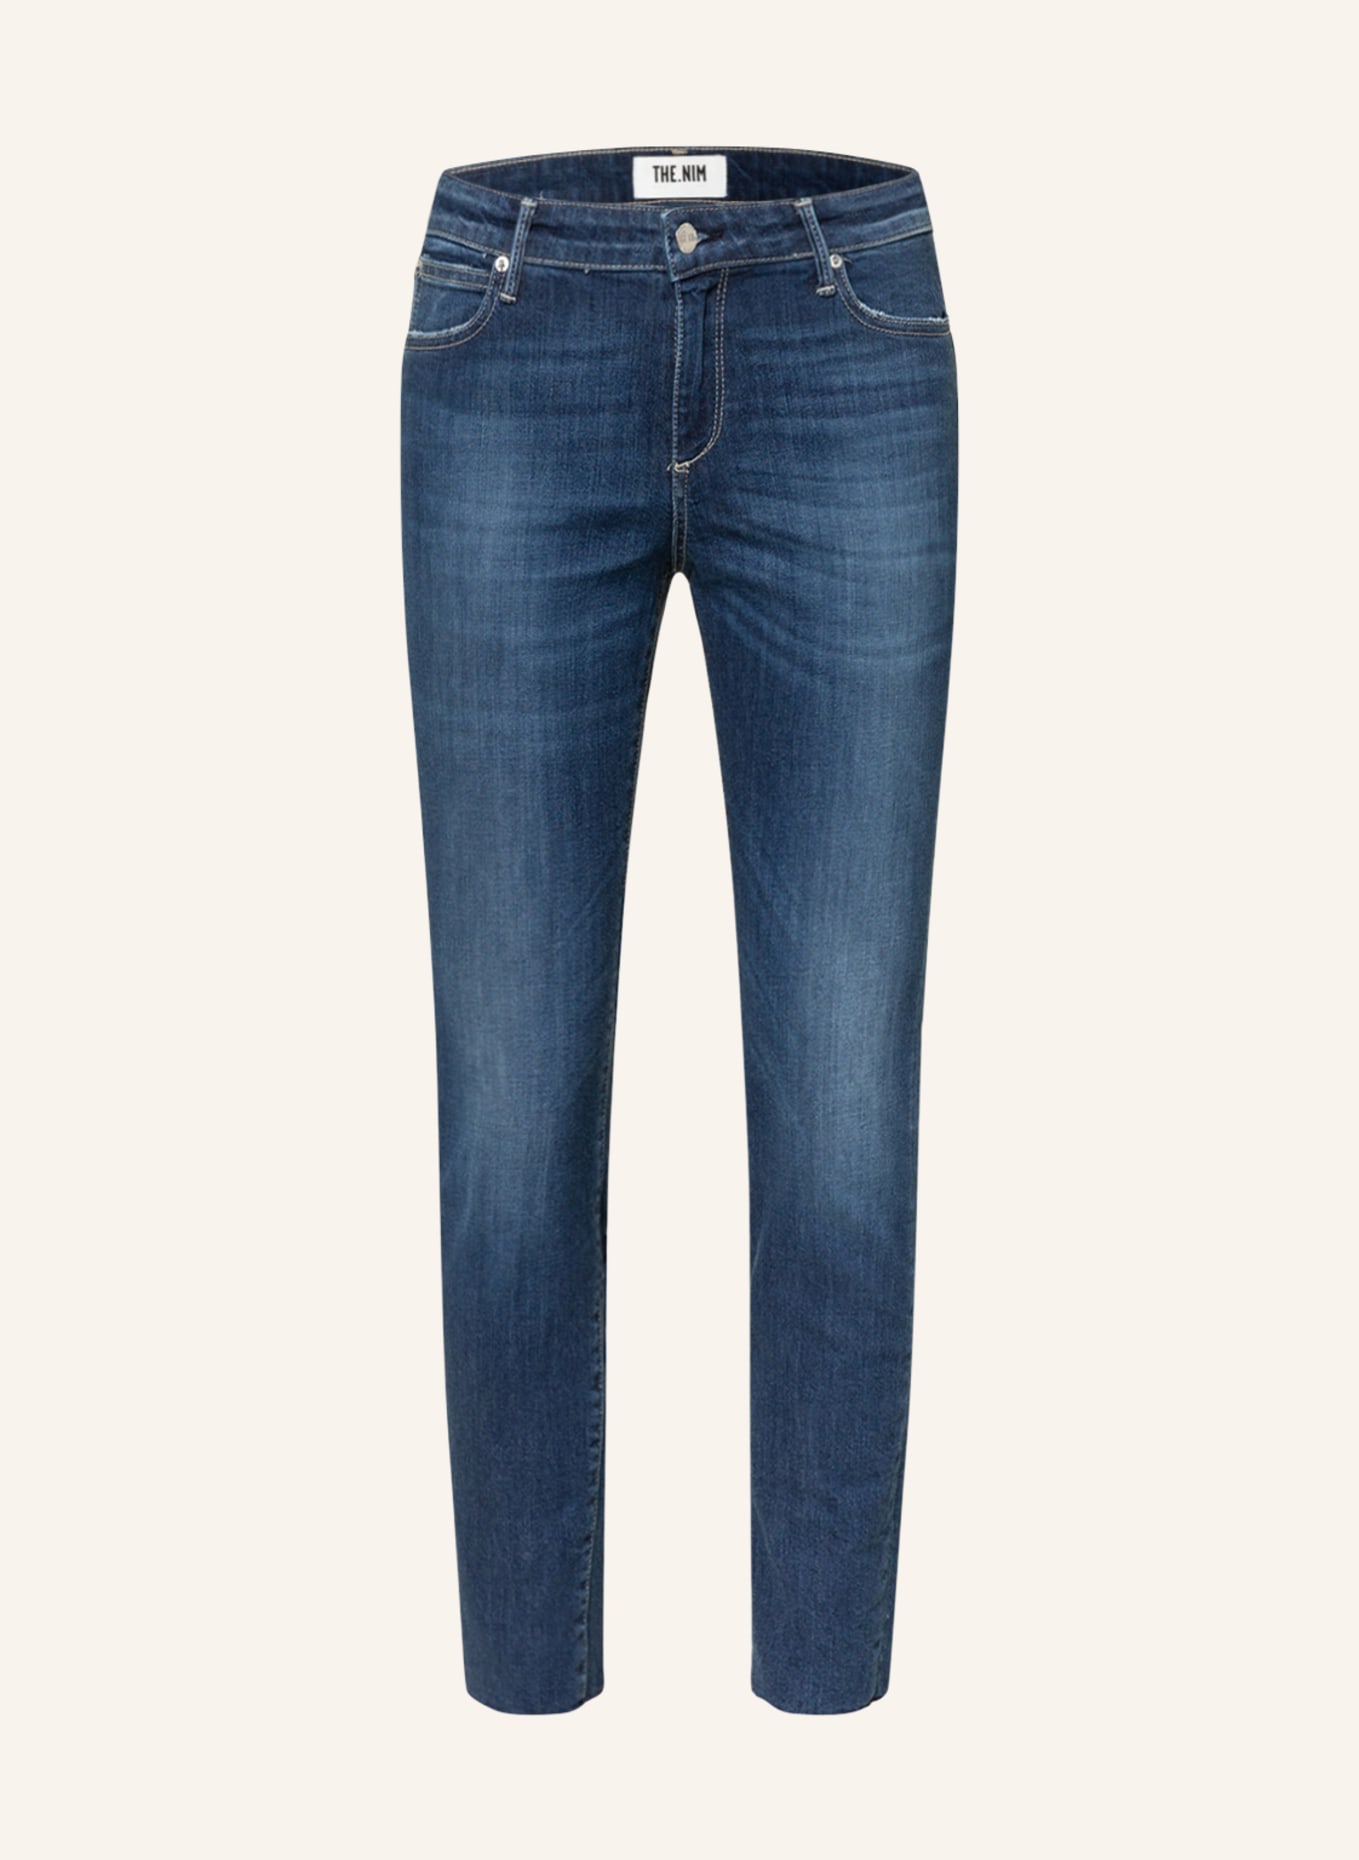 THE.NIM STANDARD Skinny Jeans , Farbe: W511-OTB Midblue (Bild 1)